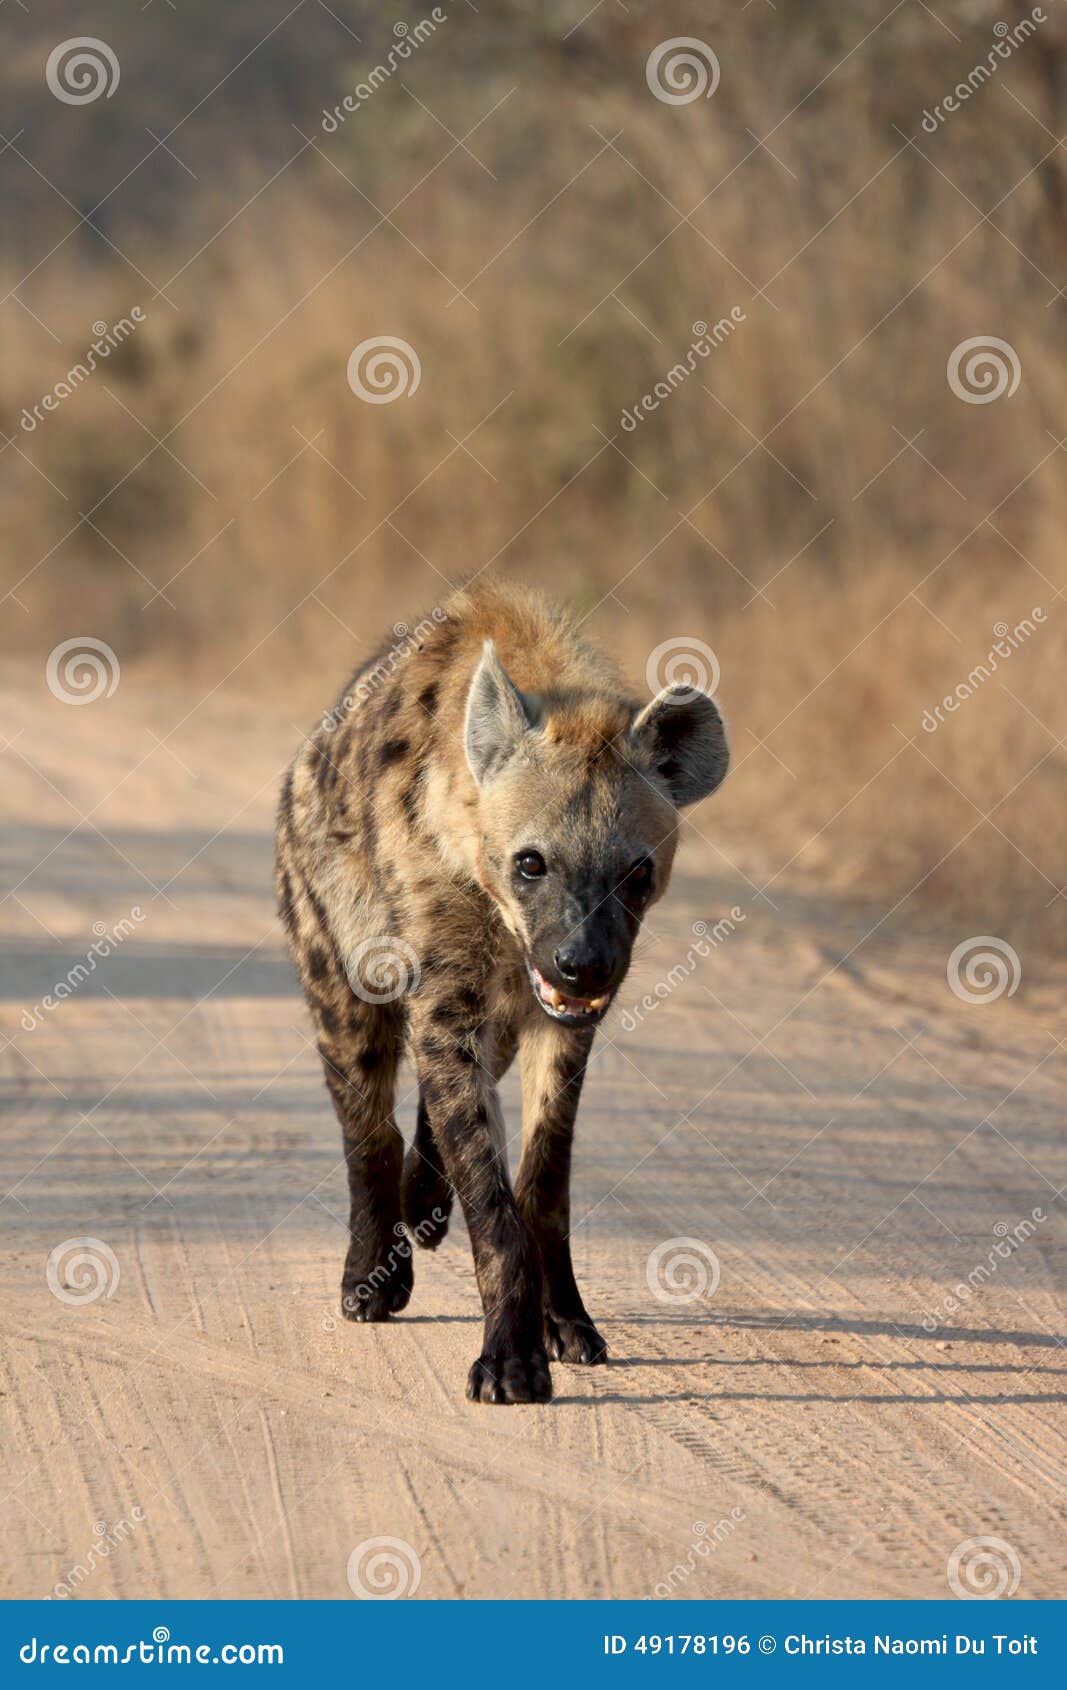 young hyena